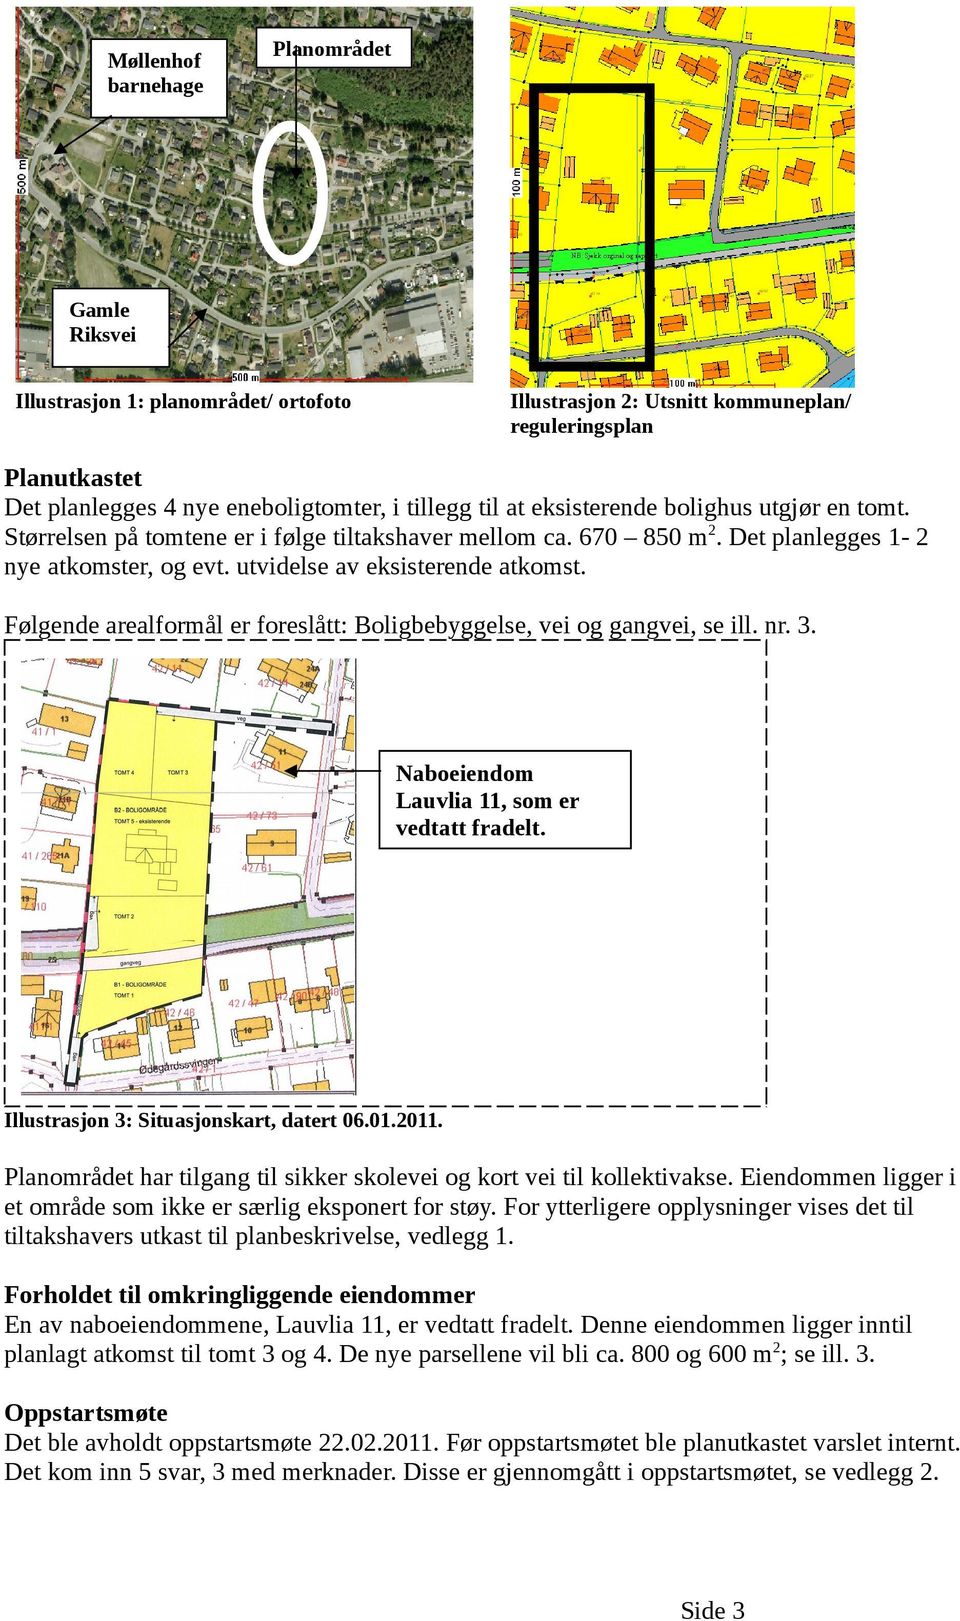 Følgende arealformål er foreslått: Boligbebyggelse, vei og gangvei, se ill. nr. 3. ArchiCA13 NOR Naboeiendom Lauvlia 11, som er vedtatt fradelt. Illustrasjon 3: Situasjonskart, datert 06.01.2011.